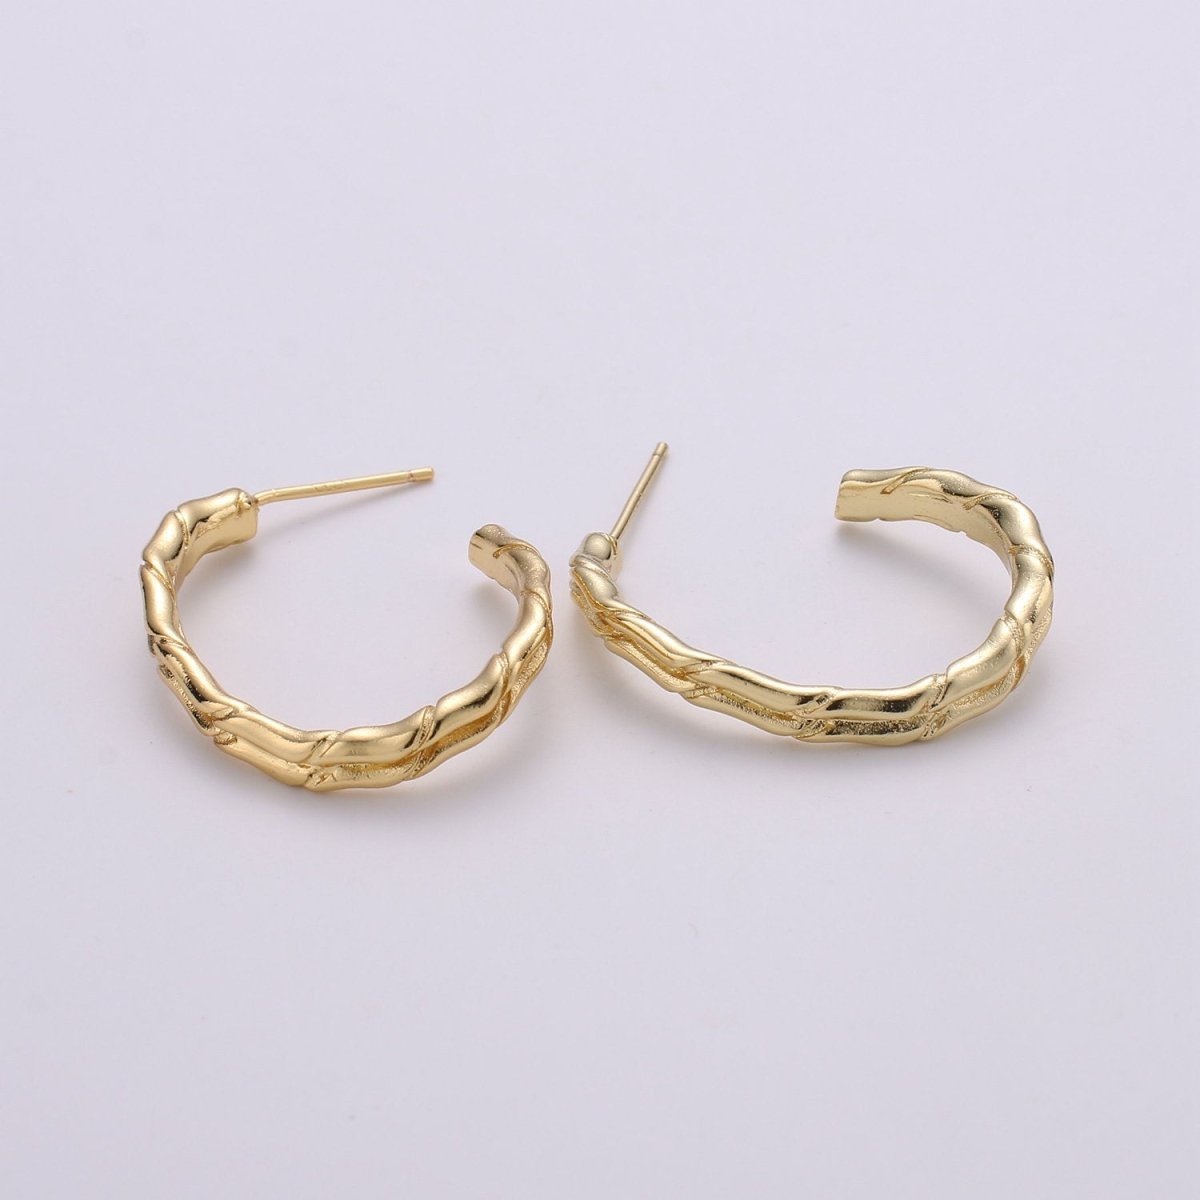 Gold Rustic Huggie Hoop Earrings, Chunky Earring Hoops, Simple Minimalist Hoop Earrings Q-174 - DLUXCA